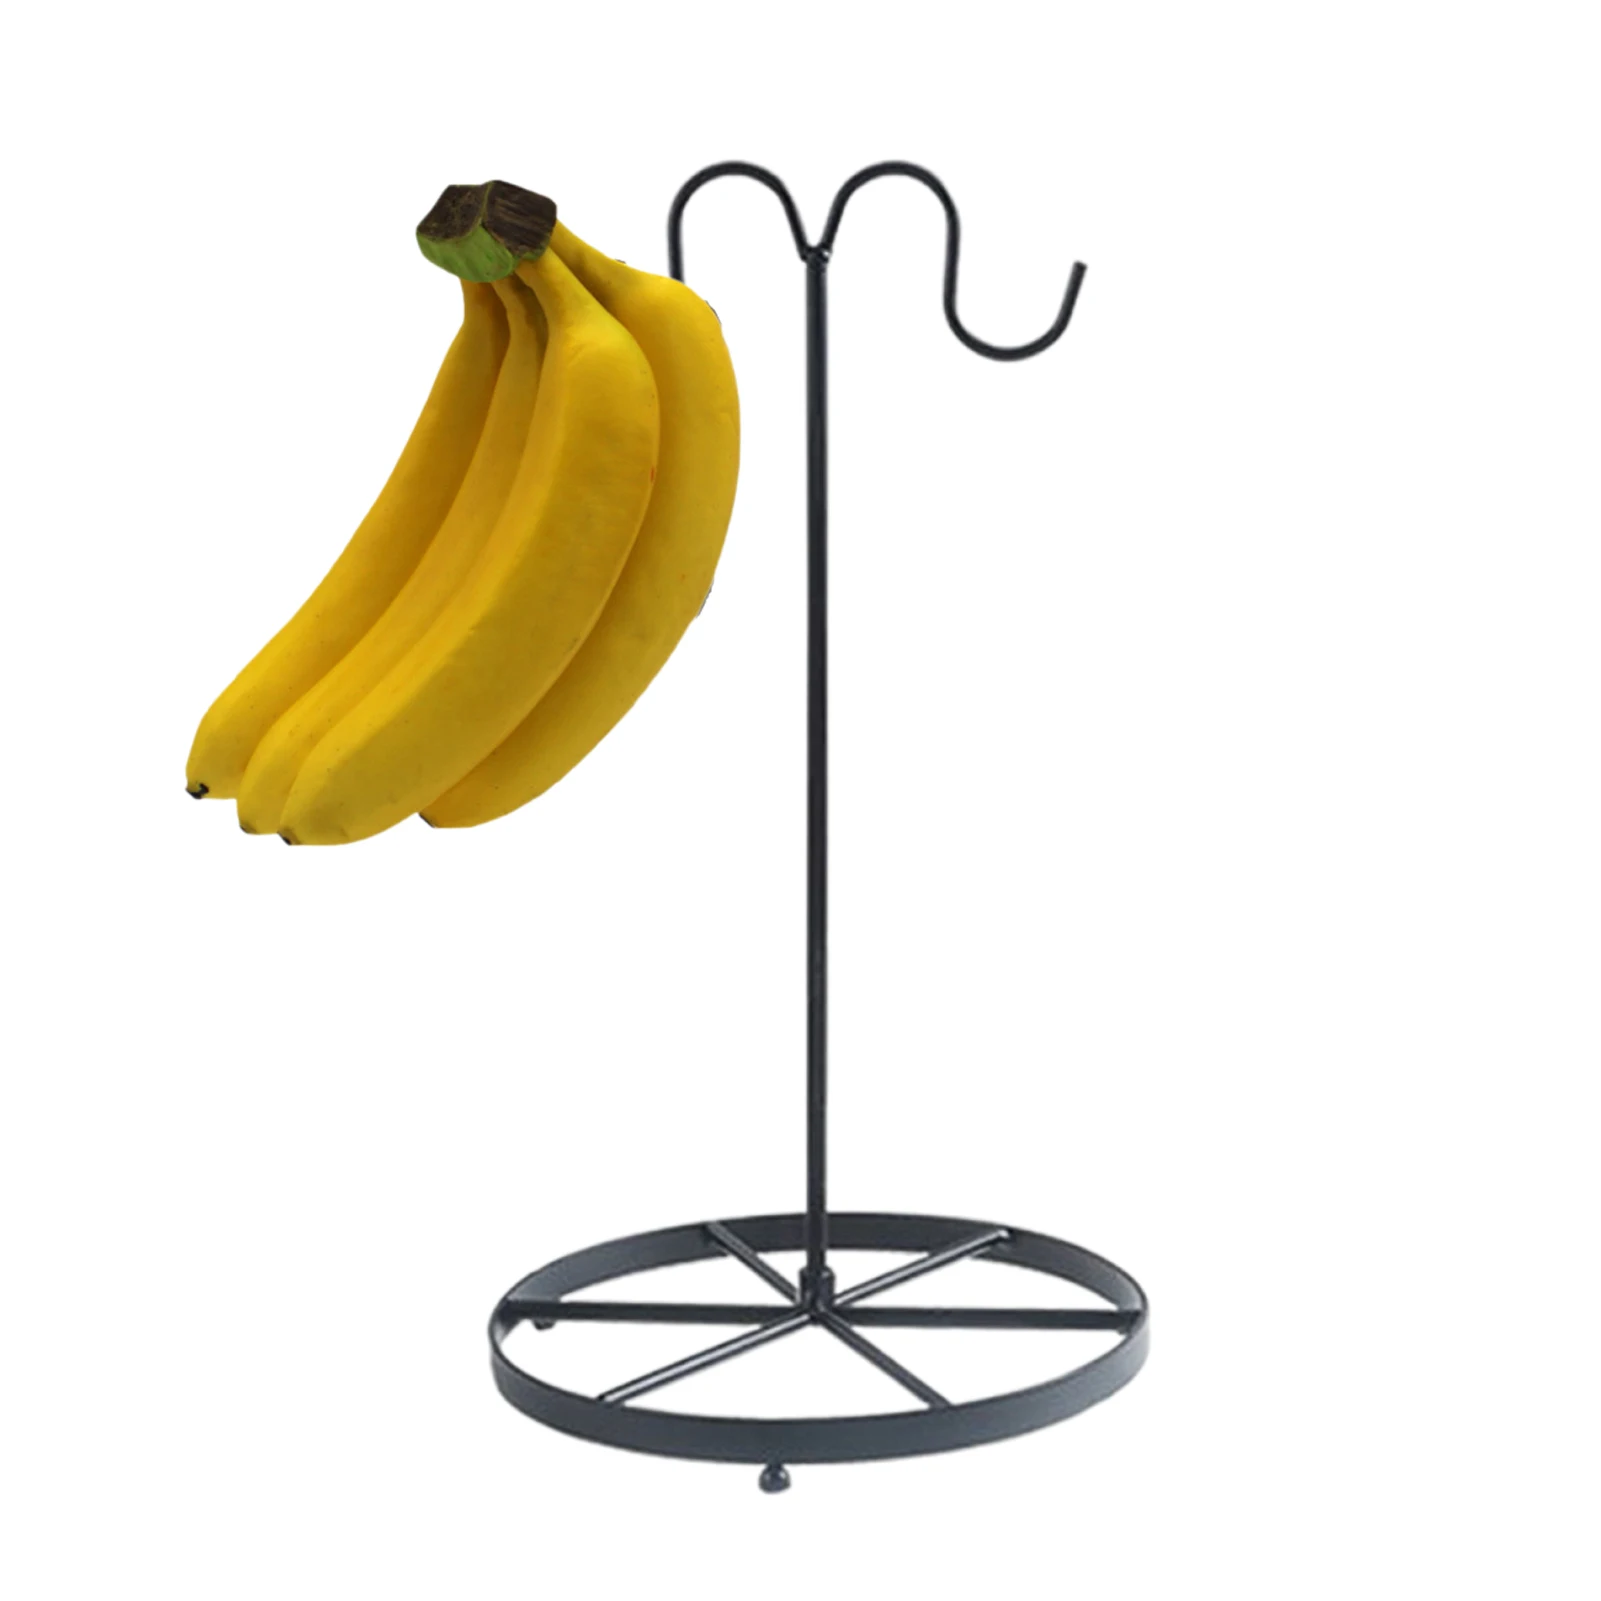 

Подставка-держатель для бананов, стойкая железная вешалка для бананов, для столешниц, для хранения фруктов, нелегко деформировать